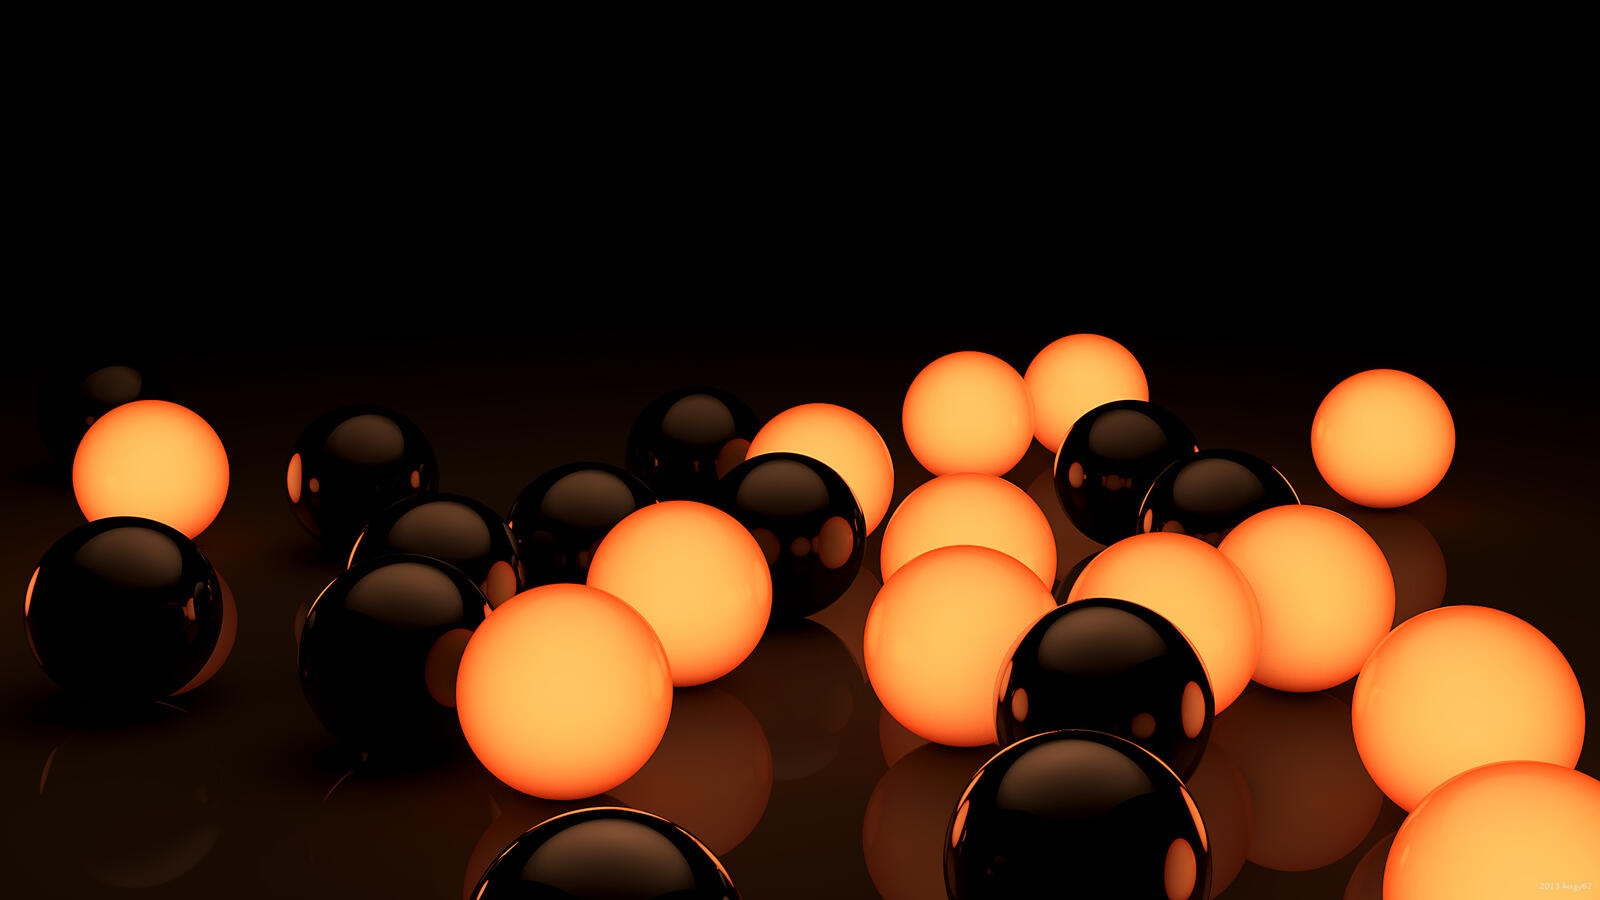 Бесплатное фото Разбросанные светящиеся шарики из стекла